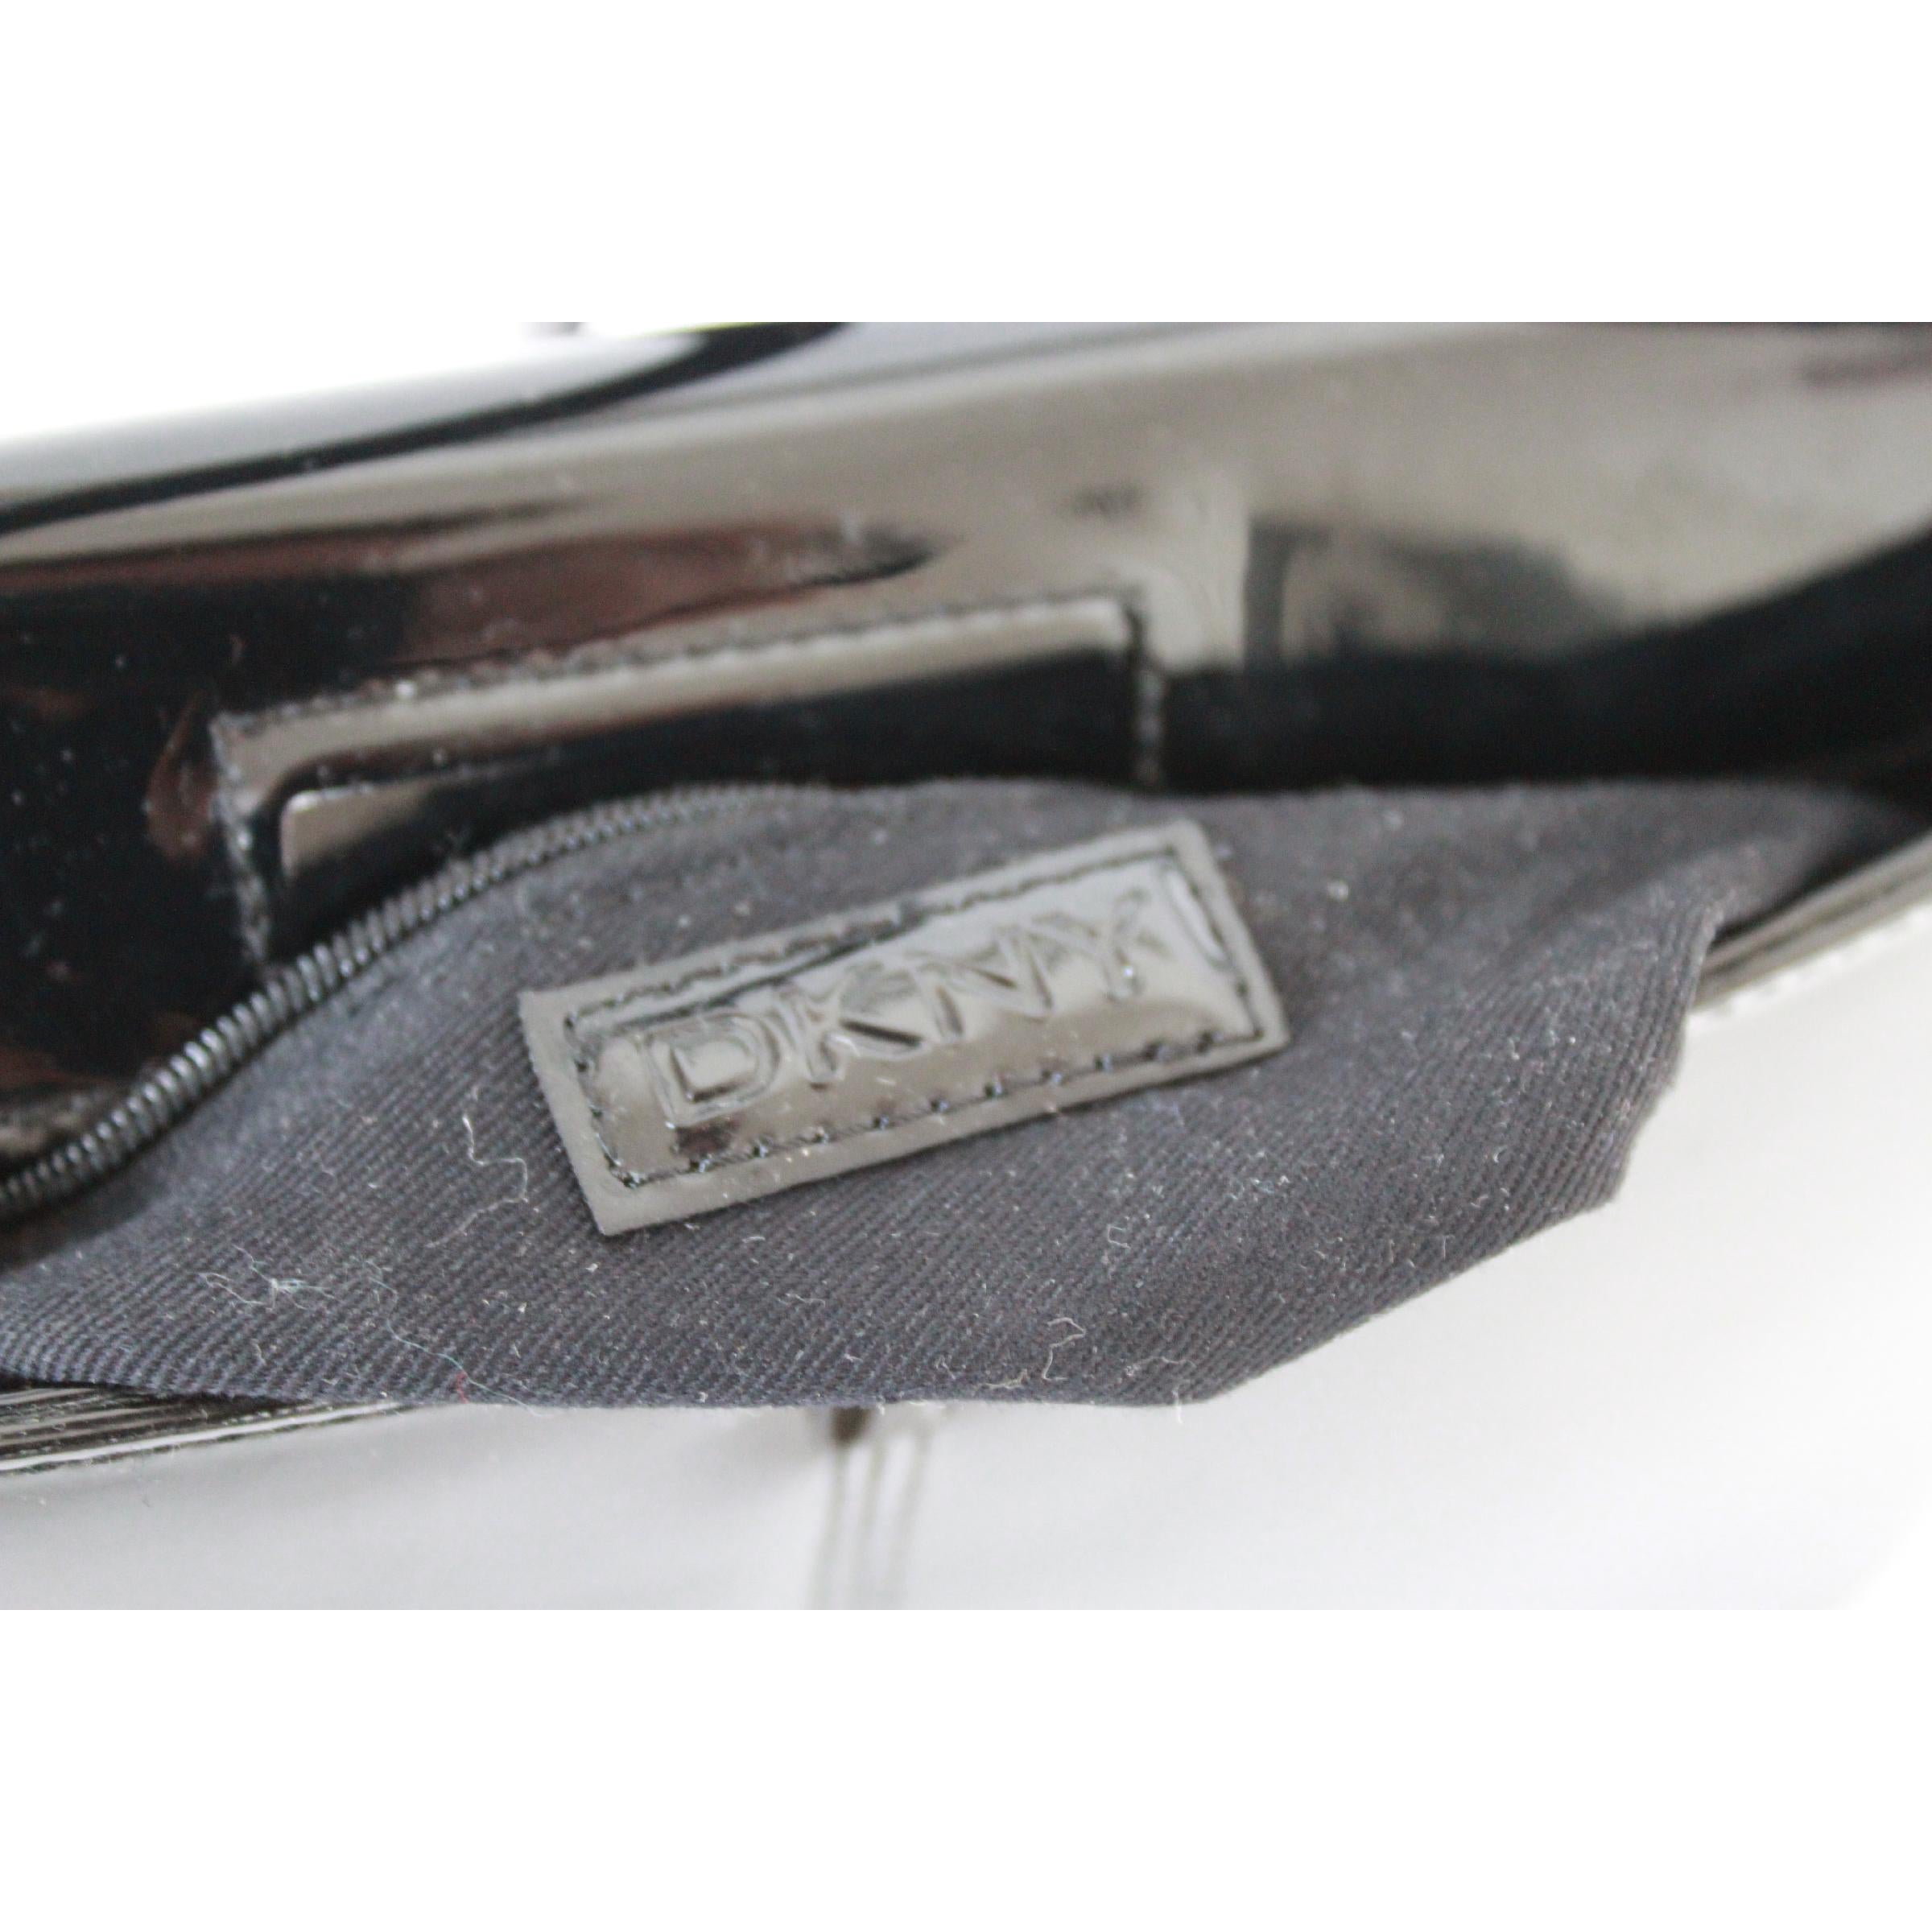 DKNY Donna Karan Black Rigid Patent Leather Shoulder Bag  1